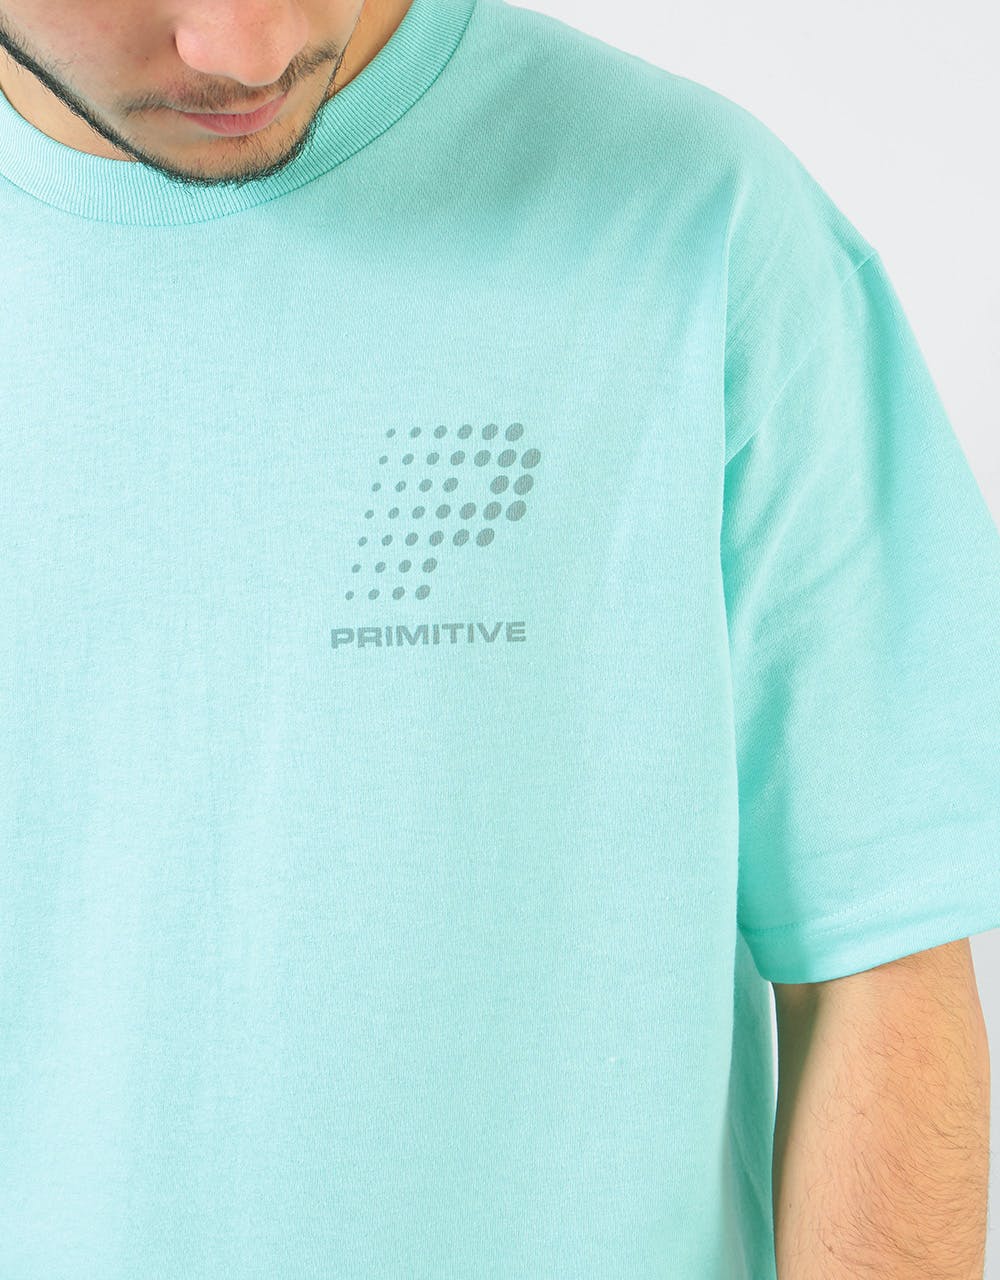 Primitive VHS T-Shirt - Celadon